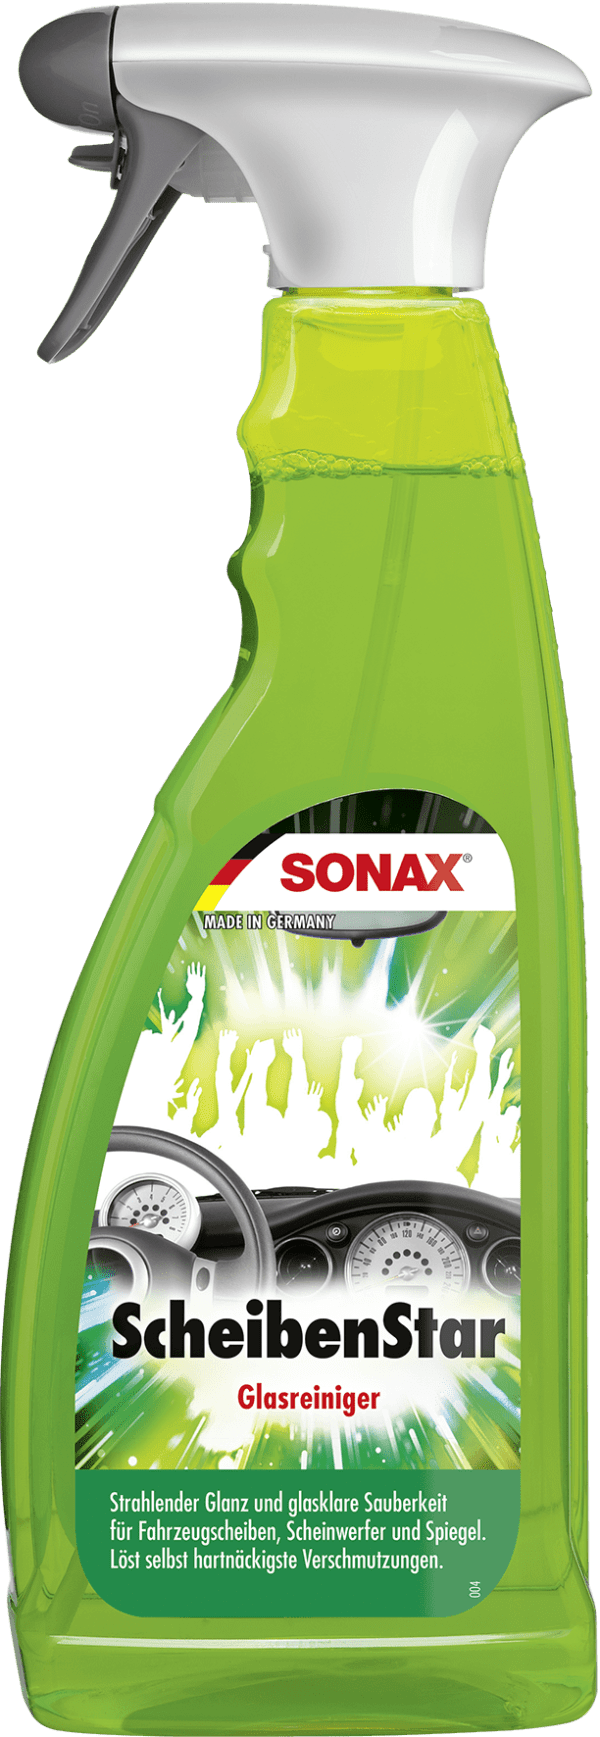 SONAX glass cleaner Scheibenstar, 750ml 